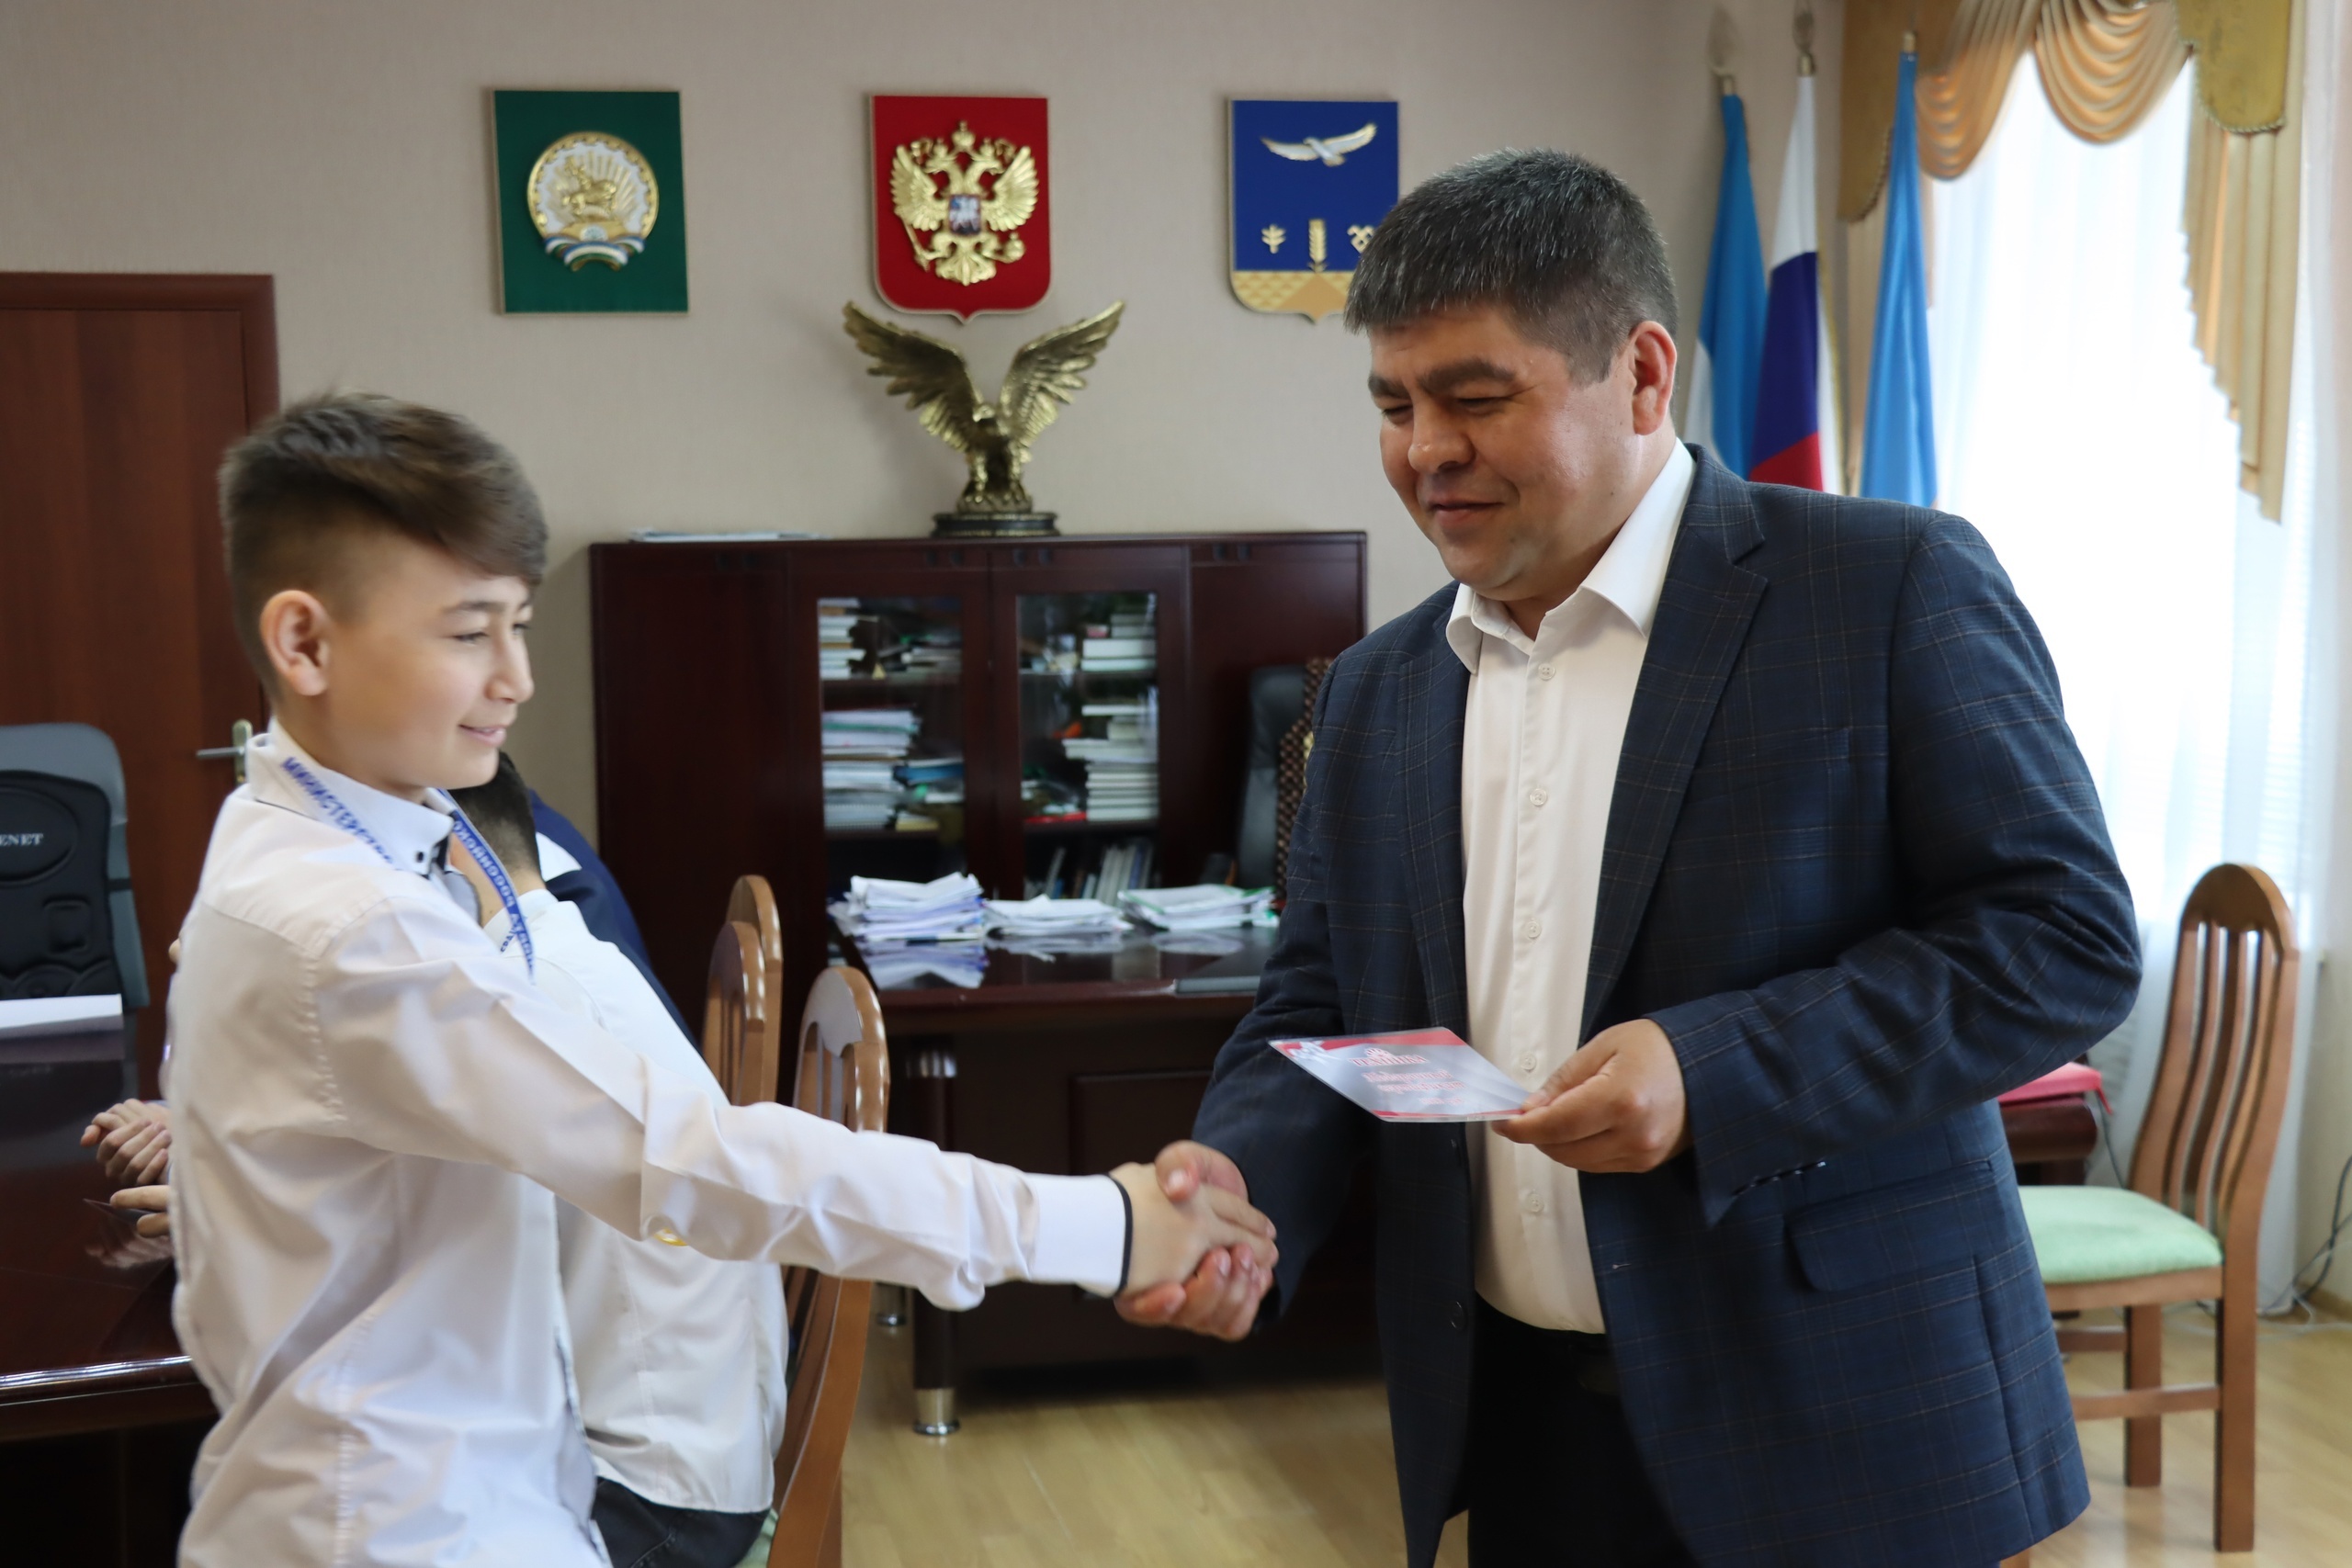 Глава Администрации Хайбуллинского района Рустам Шарипов встретился с районной командой по лапте, вернувшейся с победой